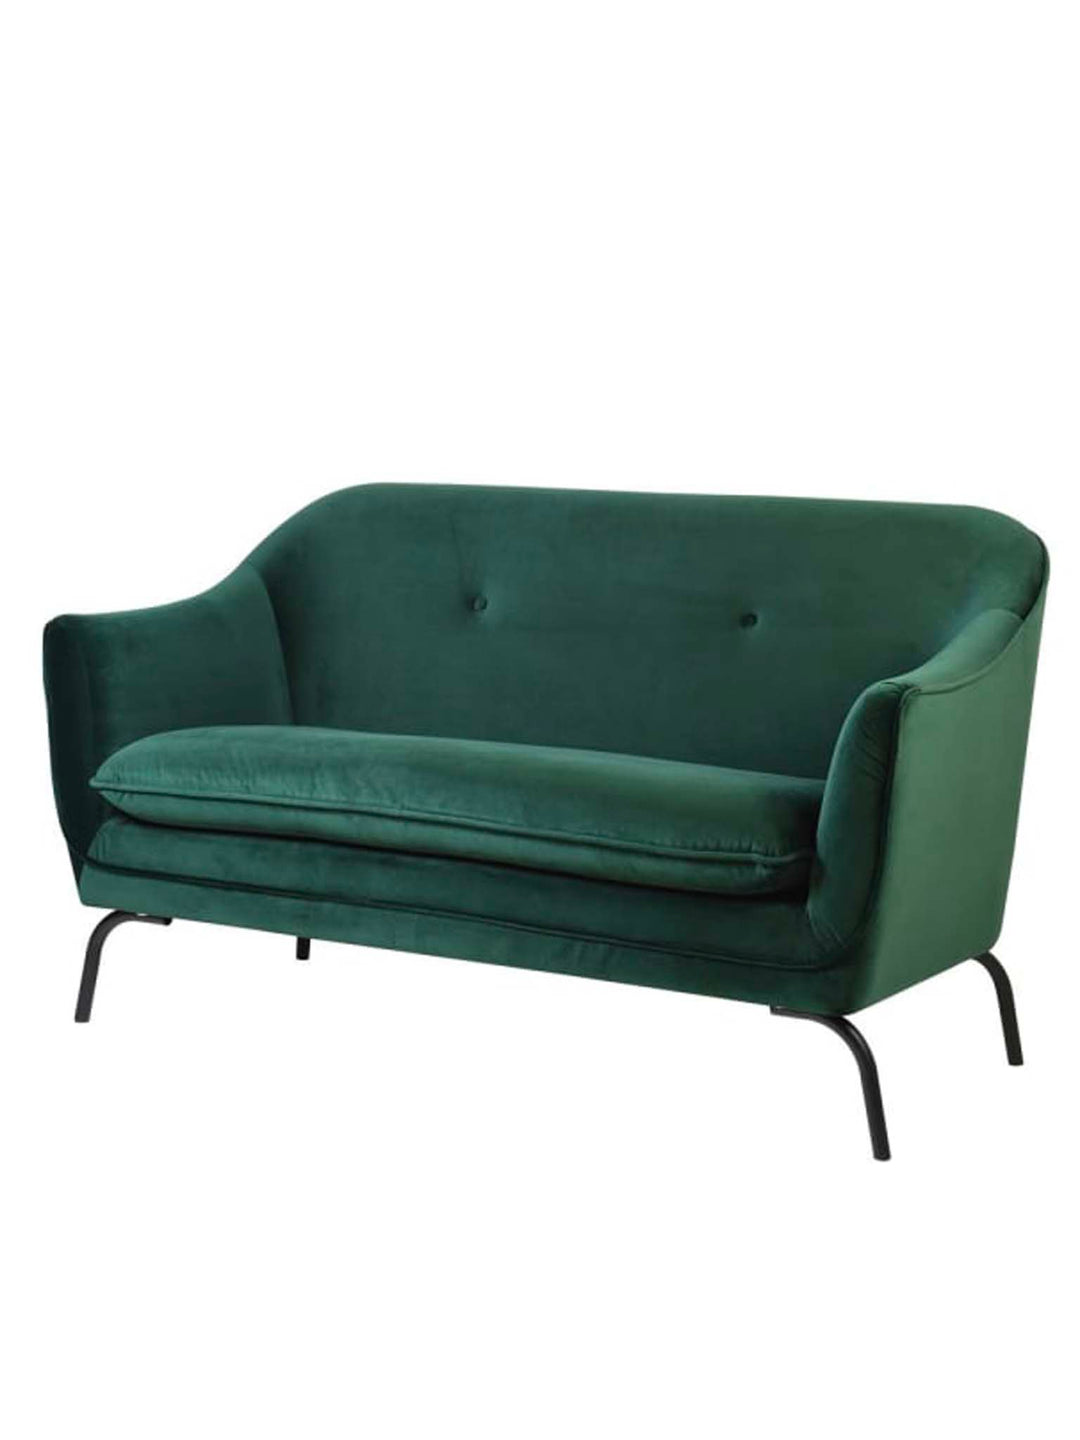 Two Seater Sofa Emerald Green